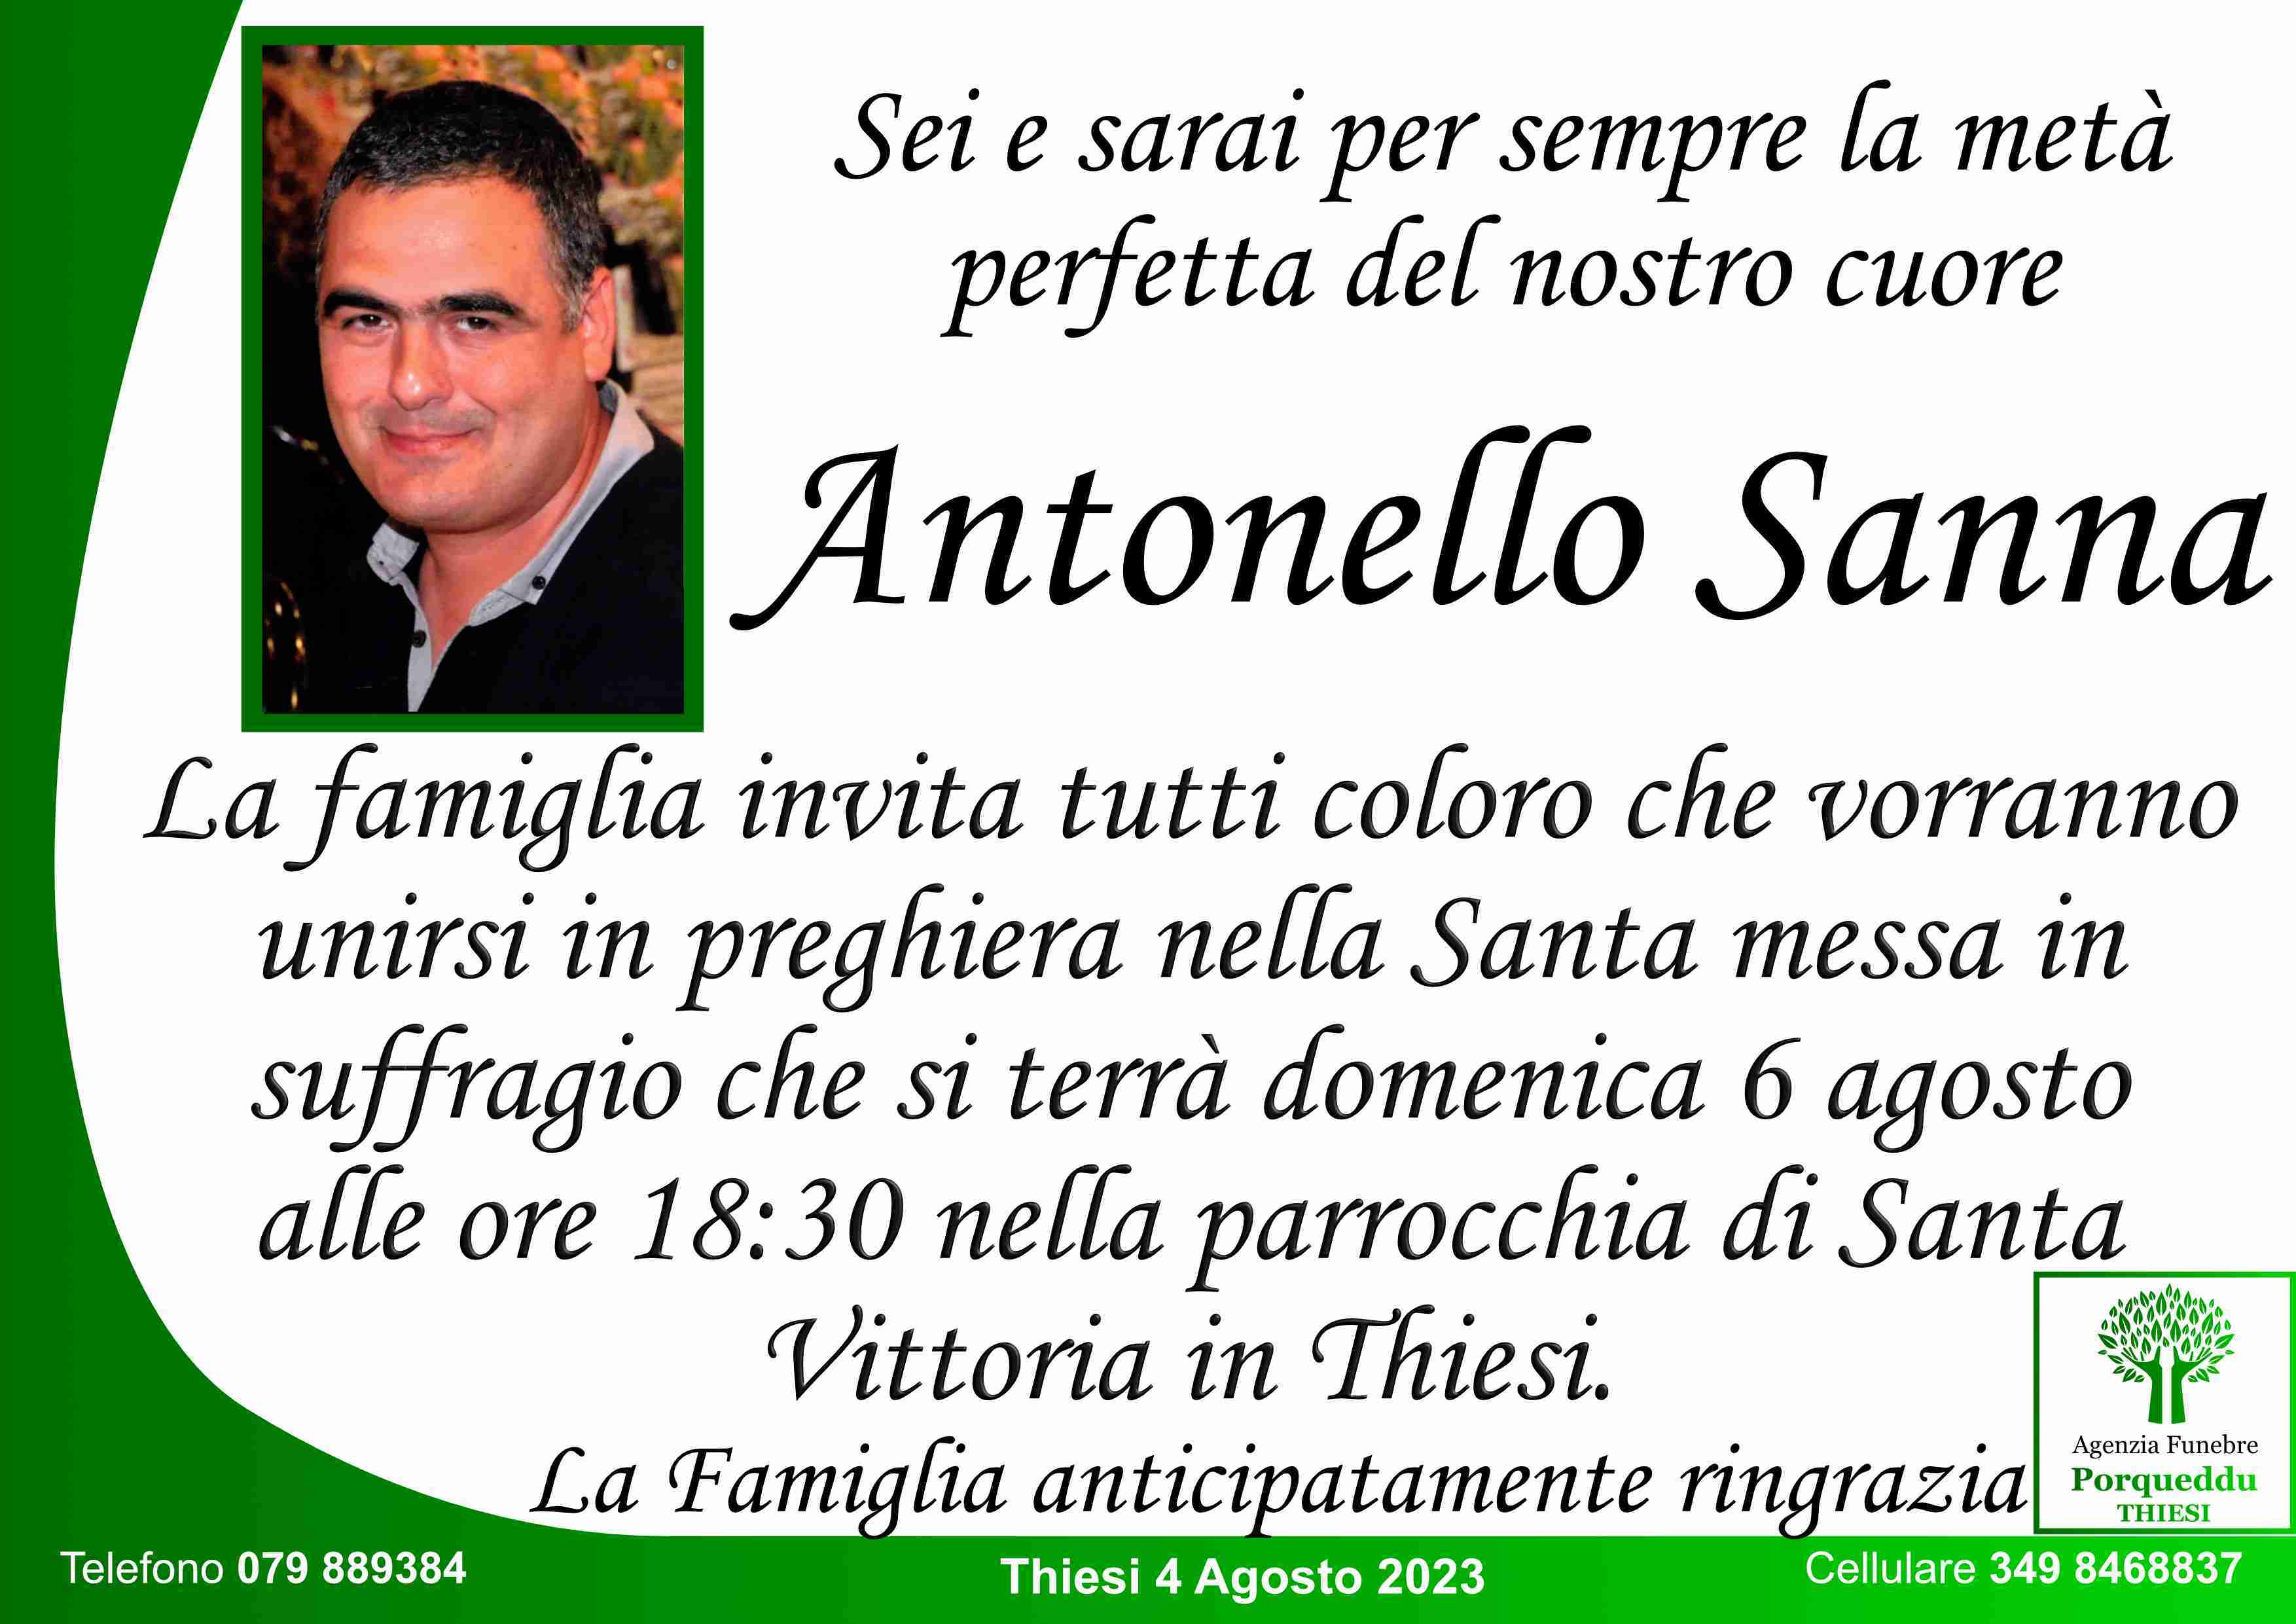 Antonello Sanna